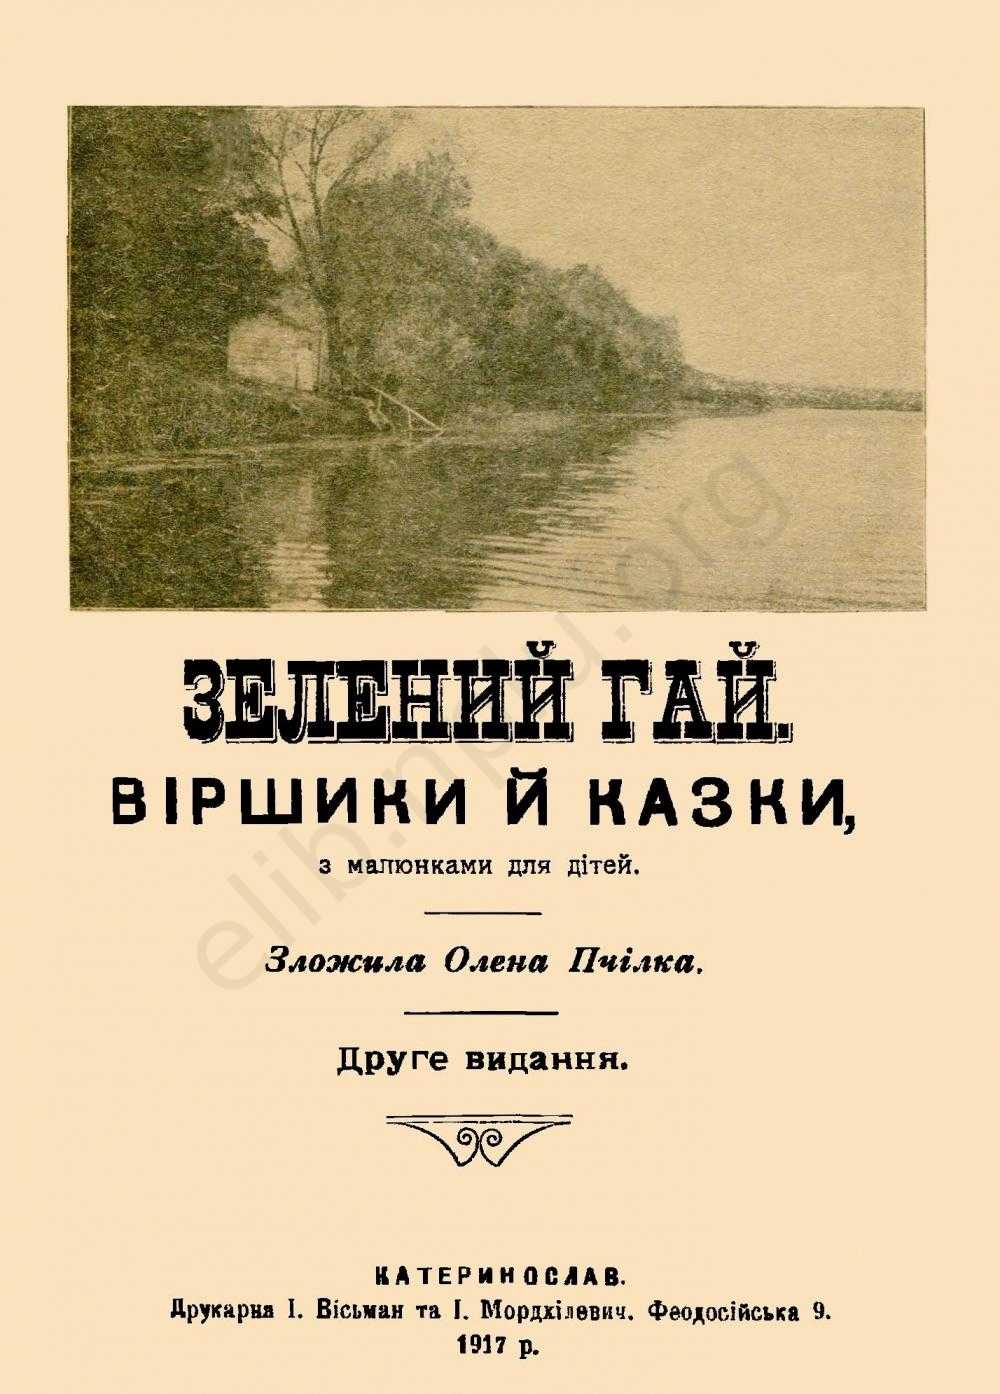 Книжка Олени Пчілки, видана в Катеринославі. Фото надане авторкою статті